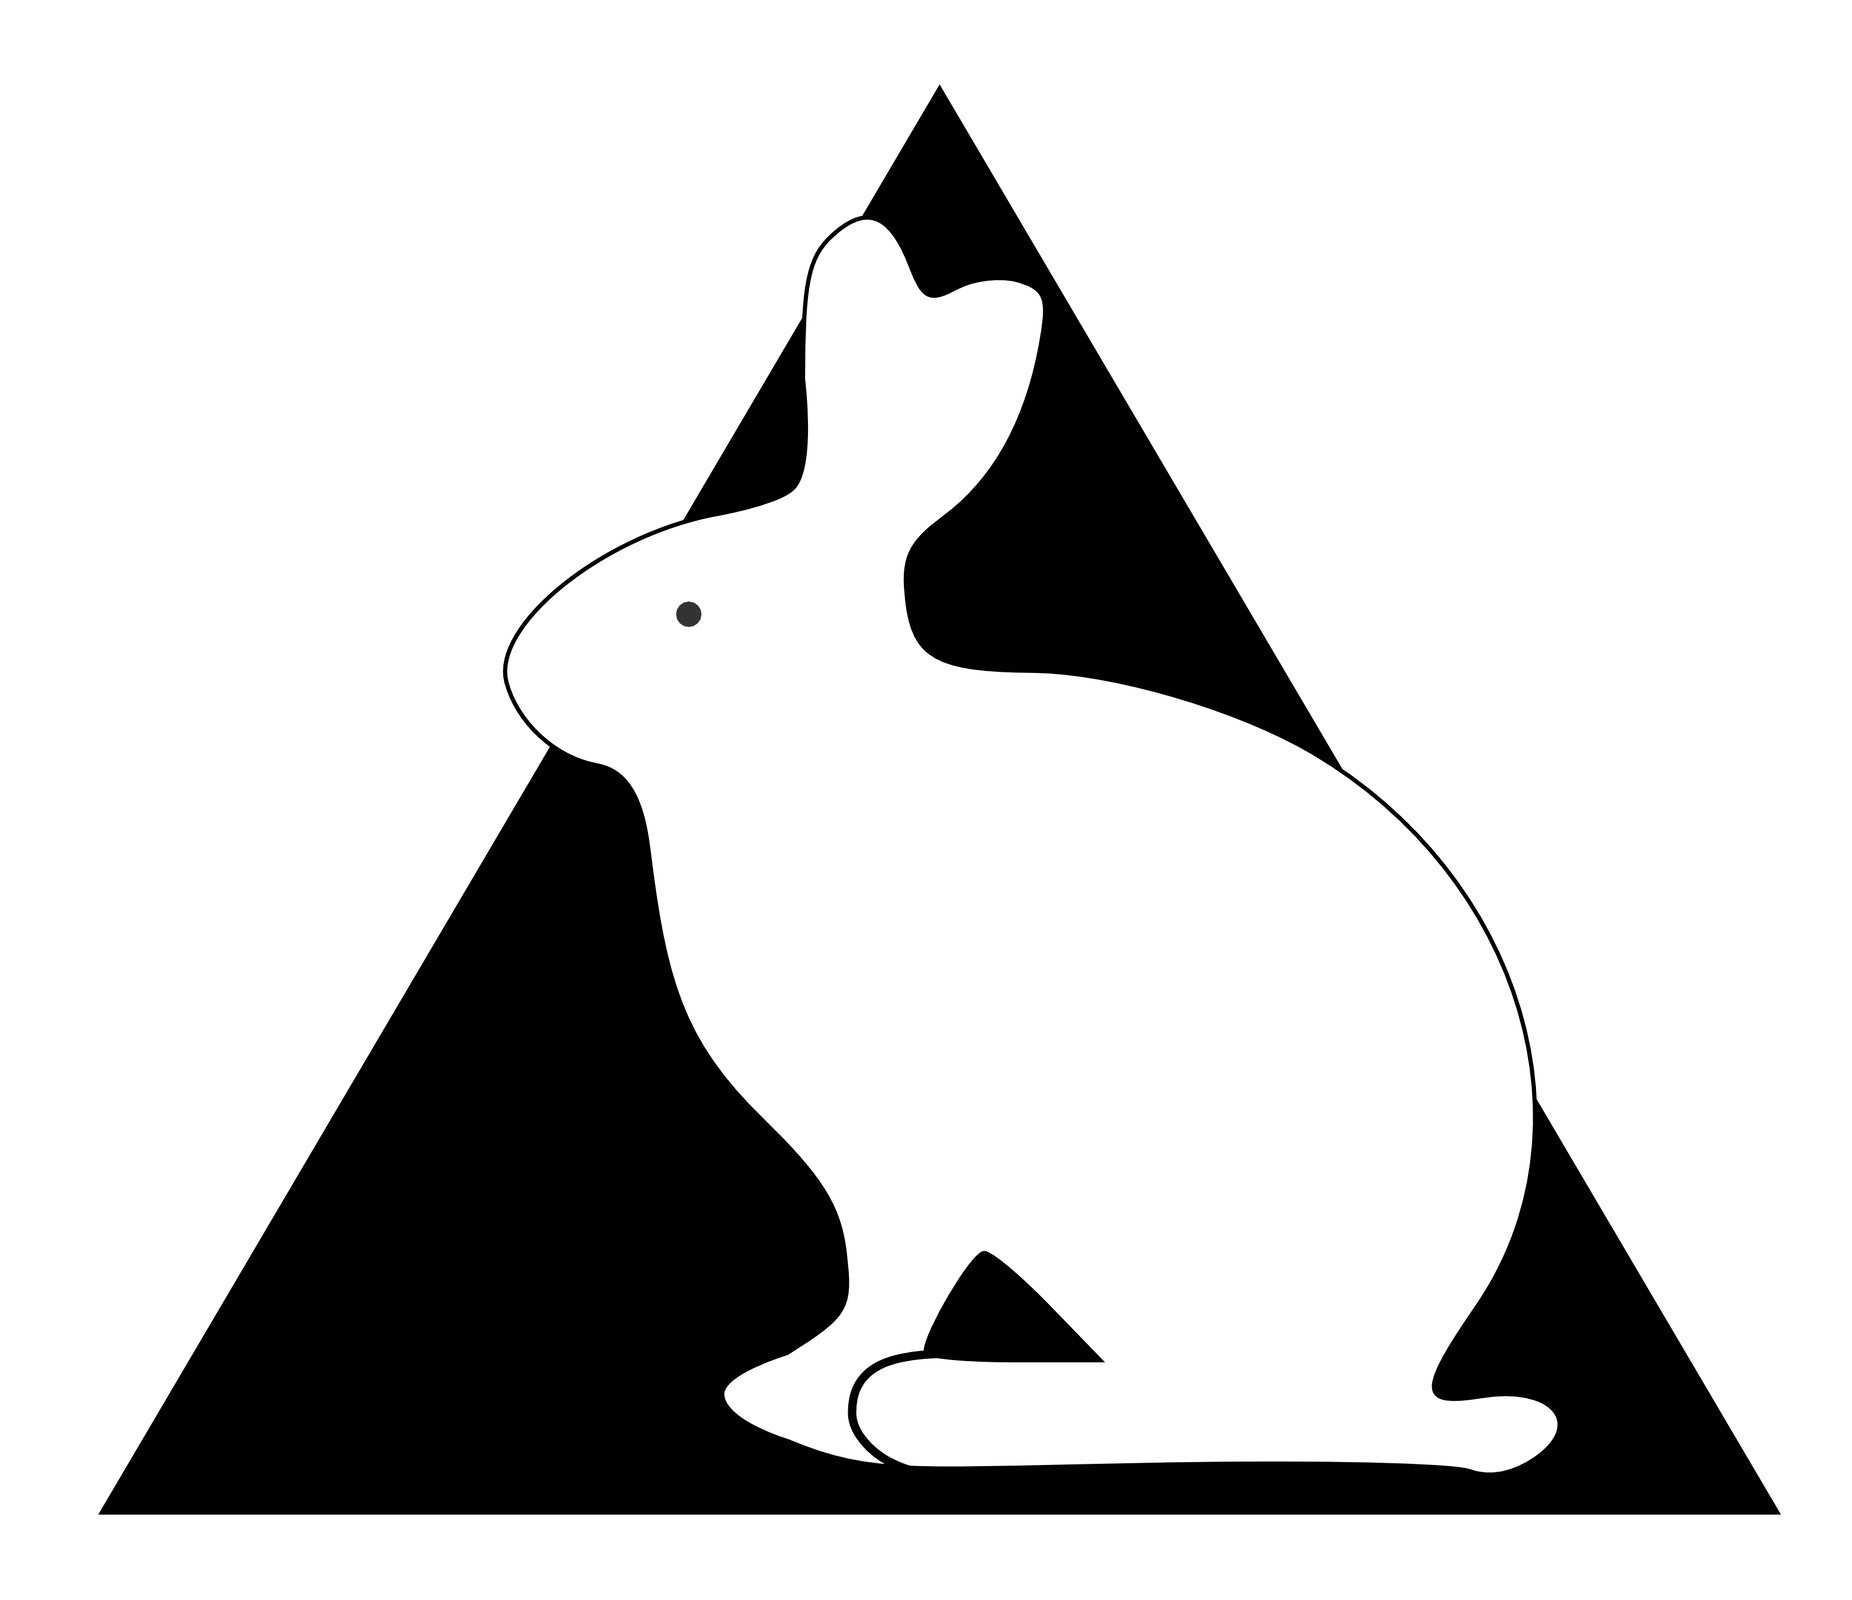 Piktogramy przedstawiające białego królika na tle czarnego trójkąta.